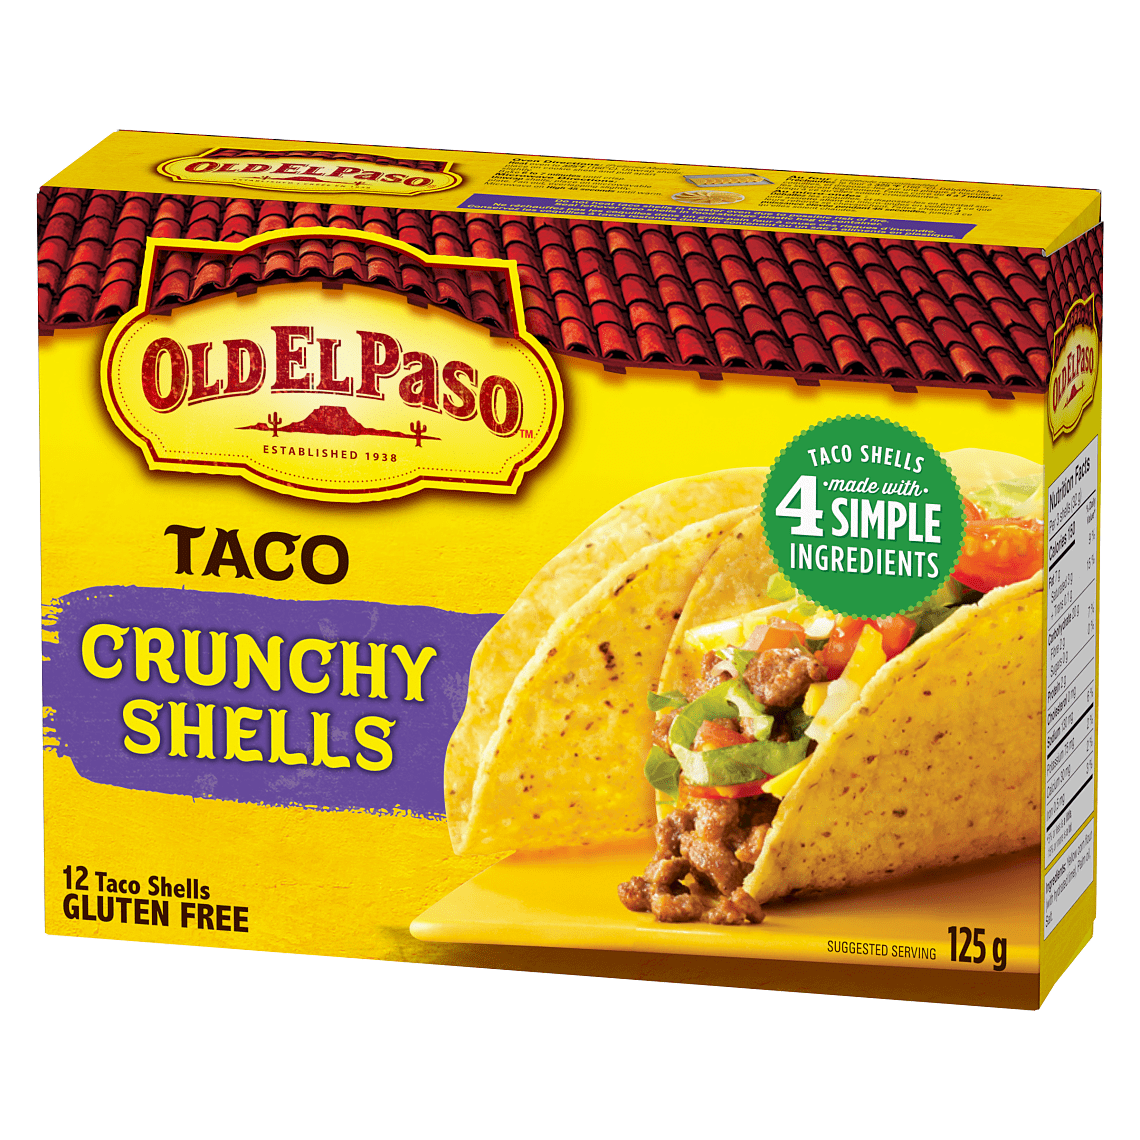 Taco Crunchy Shells